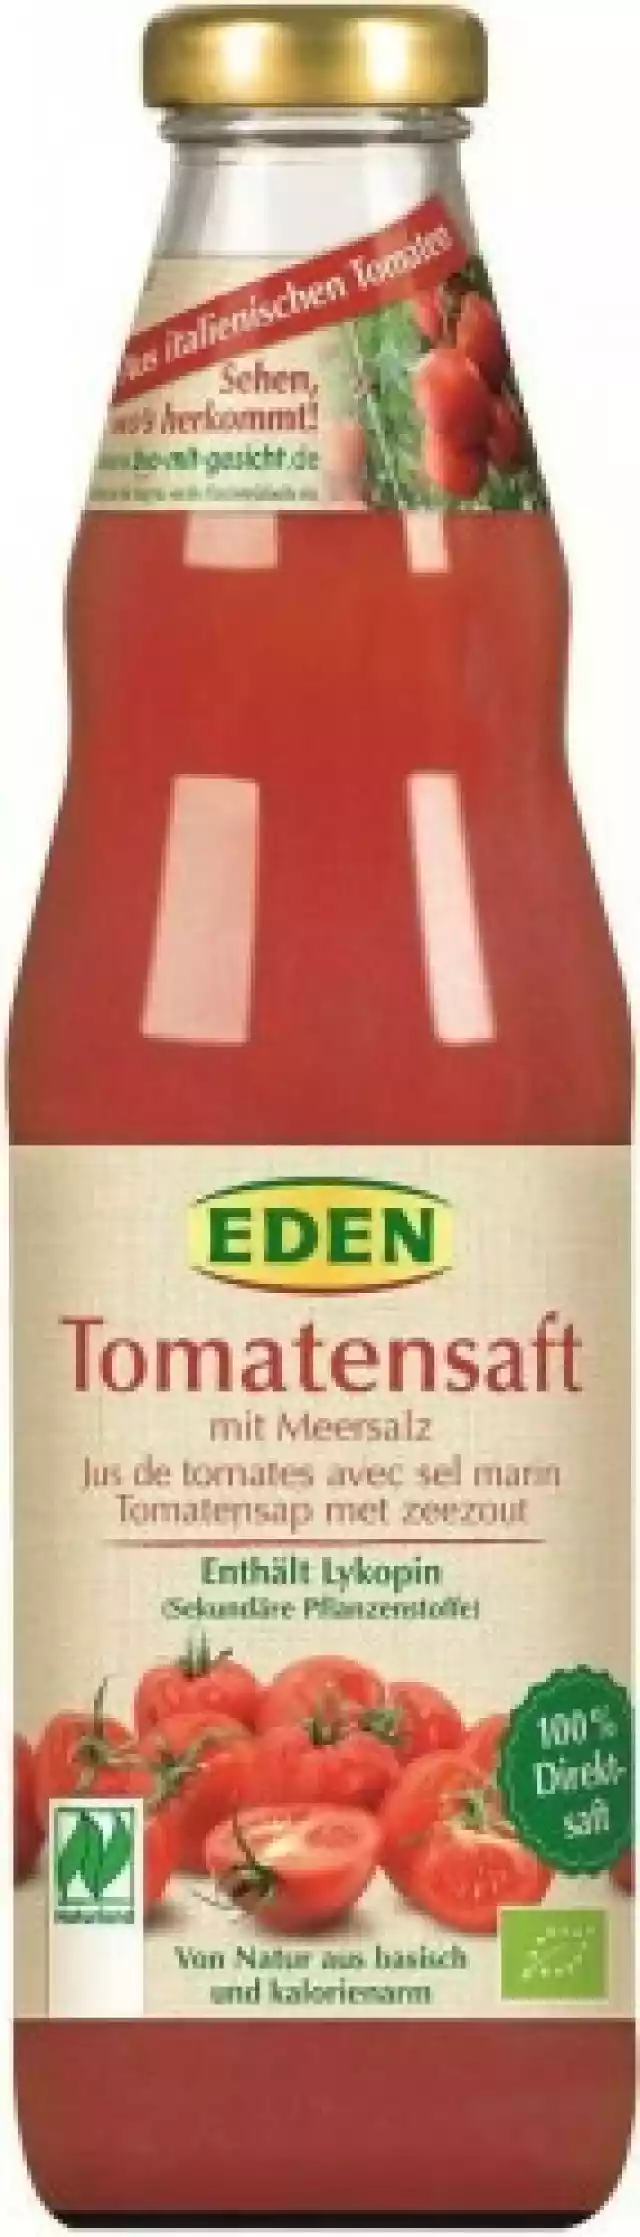 SKŁADNIKIsok pomidorowy(99%)*, sok cytry